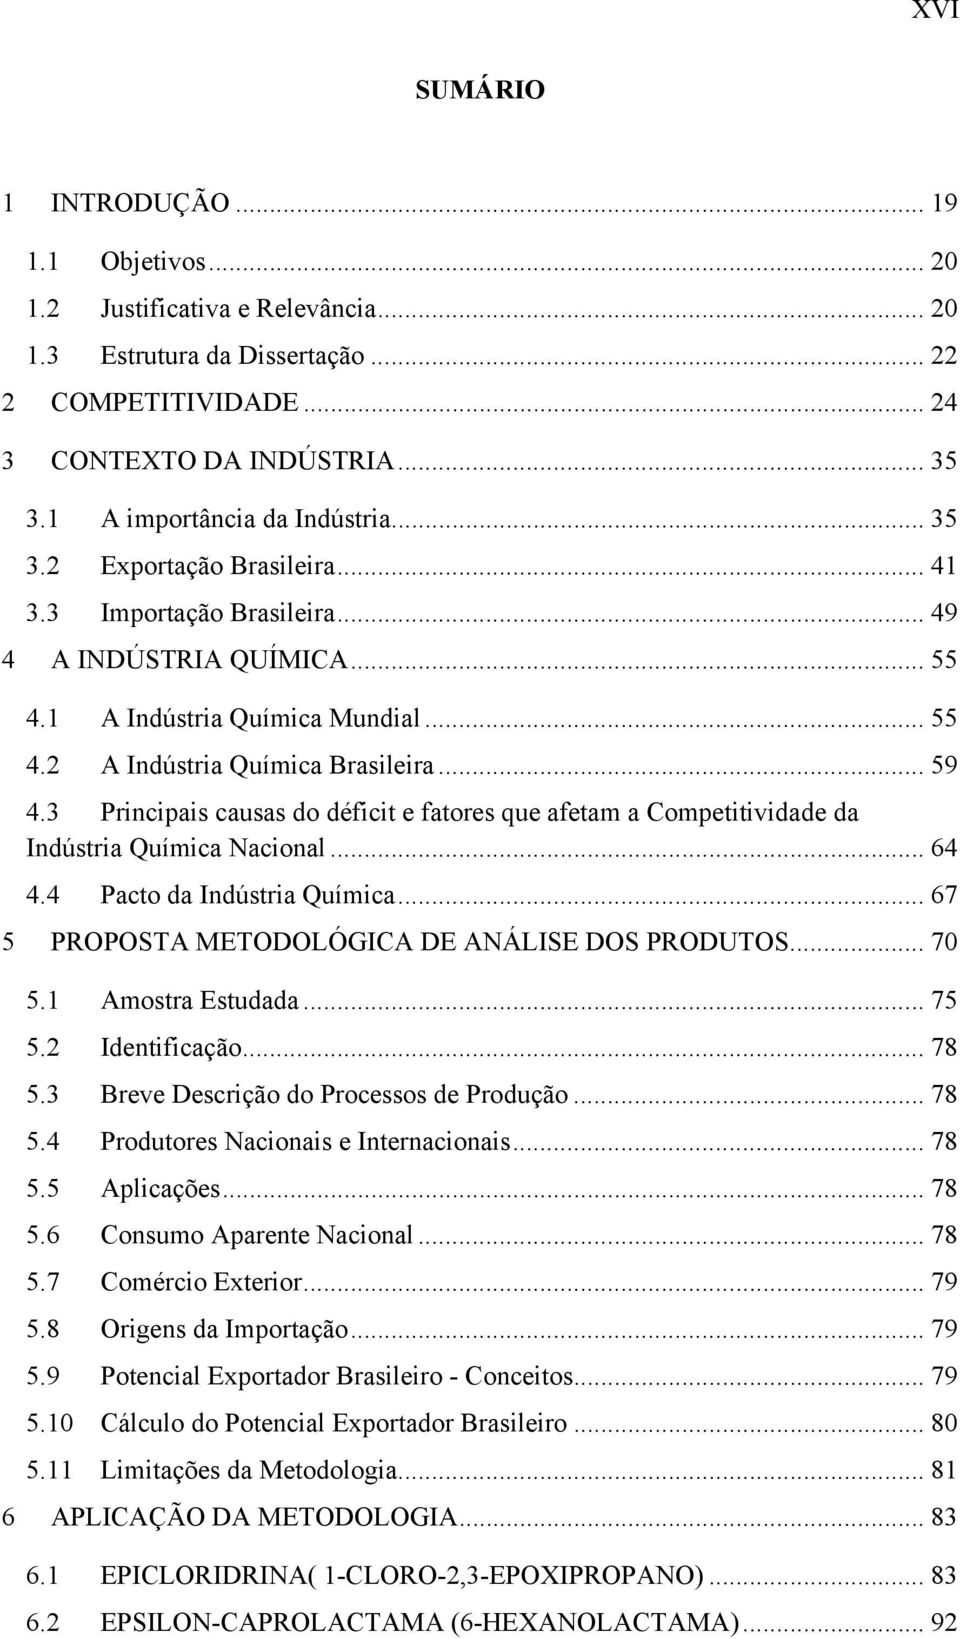 .. 59 4.3 Principais causas do déficit e fatores que afetam a Competitividade da Indústria Química Nacional... 64 4.4 Pacto da Indústria Química... 67 5 PROPOSTA METODOLÓGICA DE ANÁLISE DOS PRODUTOS.